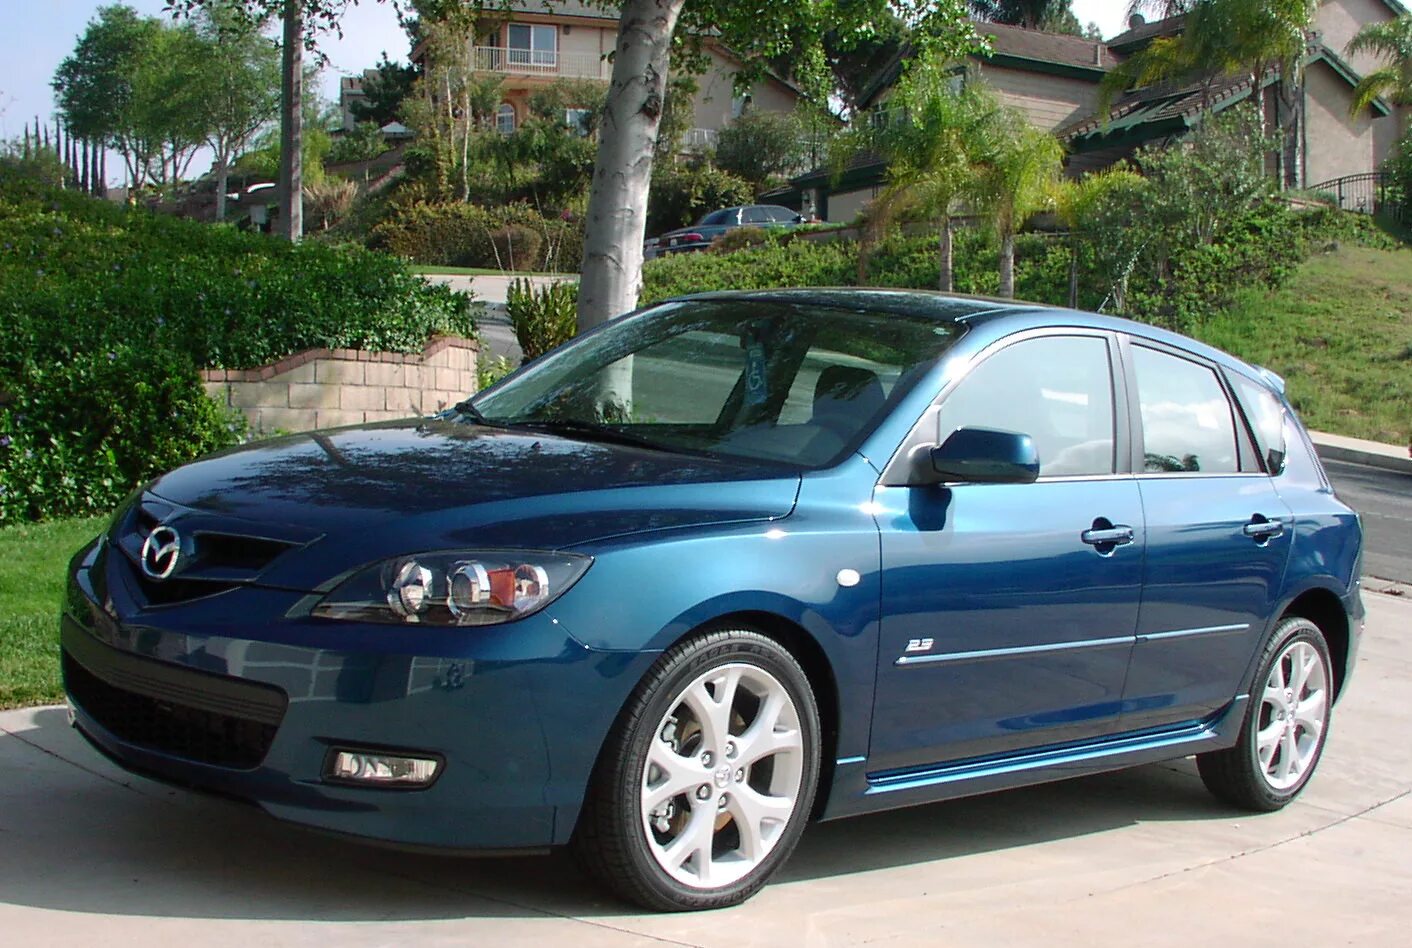 Mazda 3 2007. Mazda 3 Hatchback 2007. Мазда 3 2007 хэтчбек 1.6. Мазда 3 седан 2007. Мазда 3 хэтчбек 2007